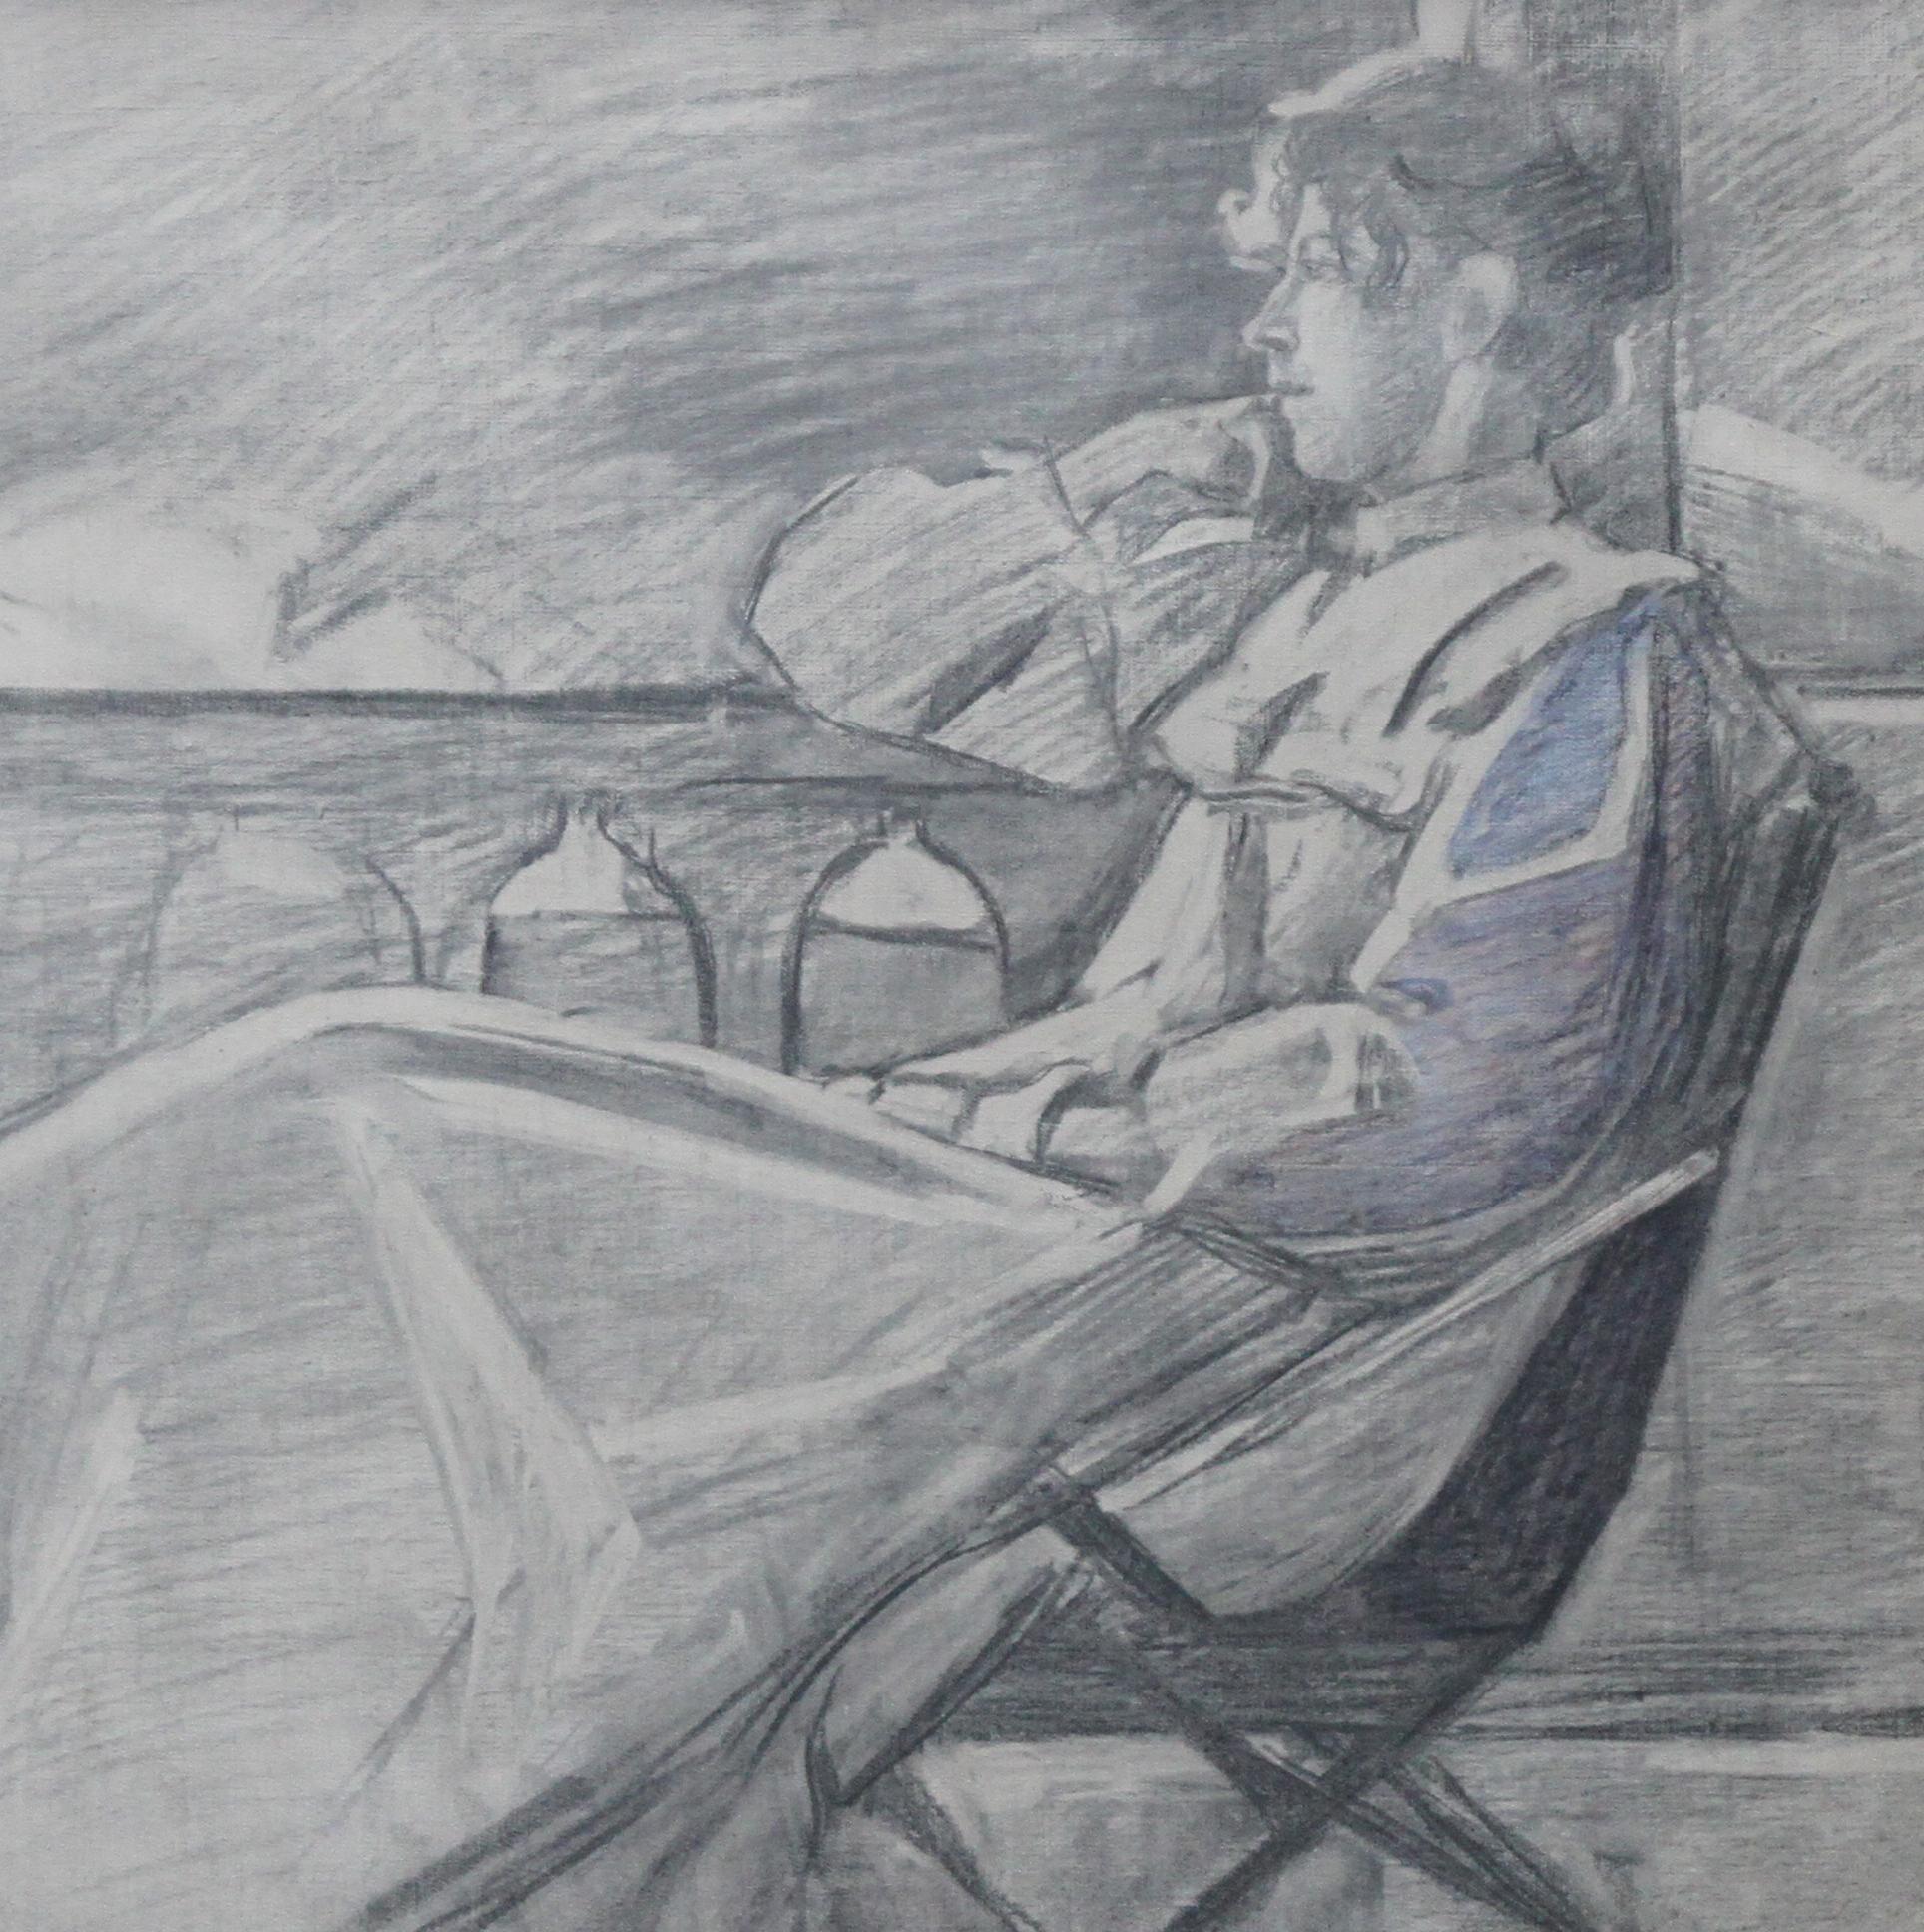 Ce joli dessin au crayon et au fusain est attribué au cercle de l'artiste français Jacques Joseph Tissot. Réalisé vers 1880, le dessin représente une femme se relaxant sur une chaise longue en plein air, perdue dans sa contemplation ou admirant la